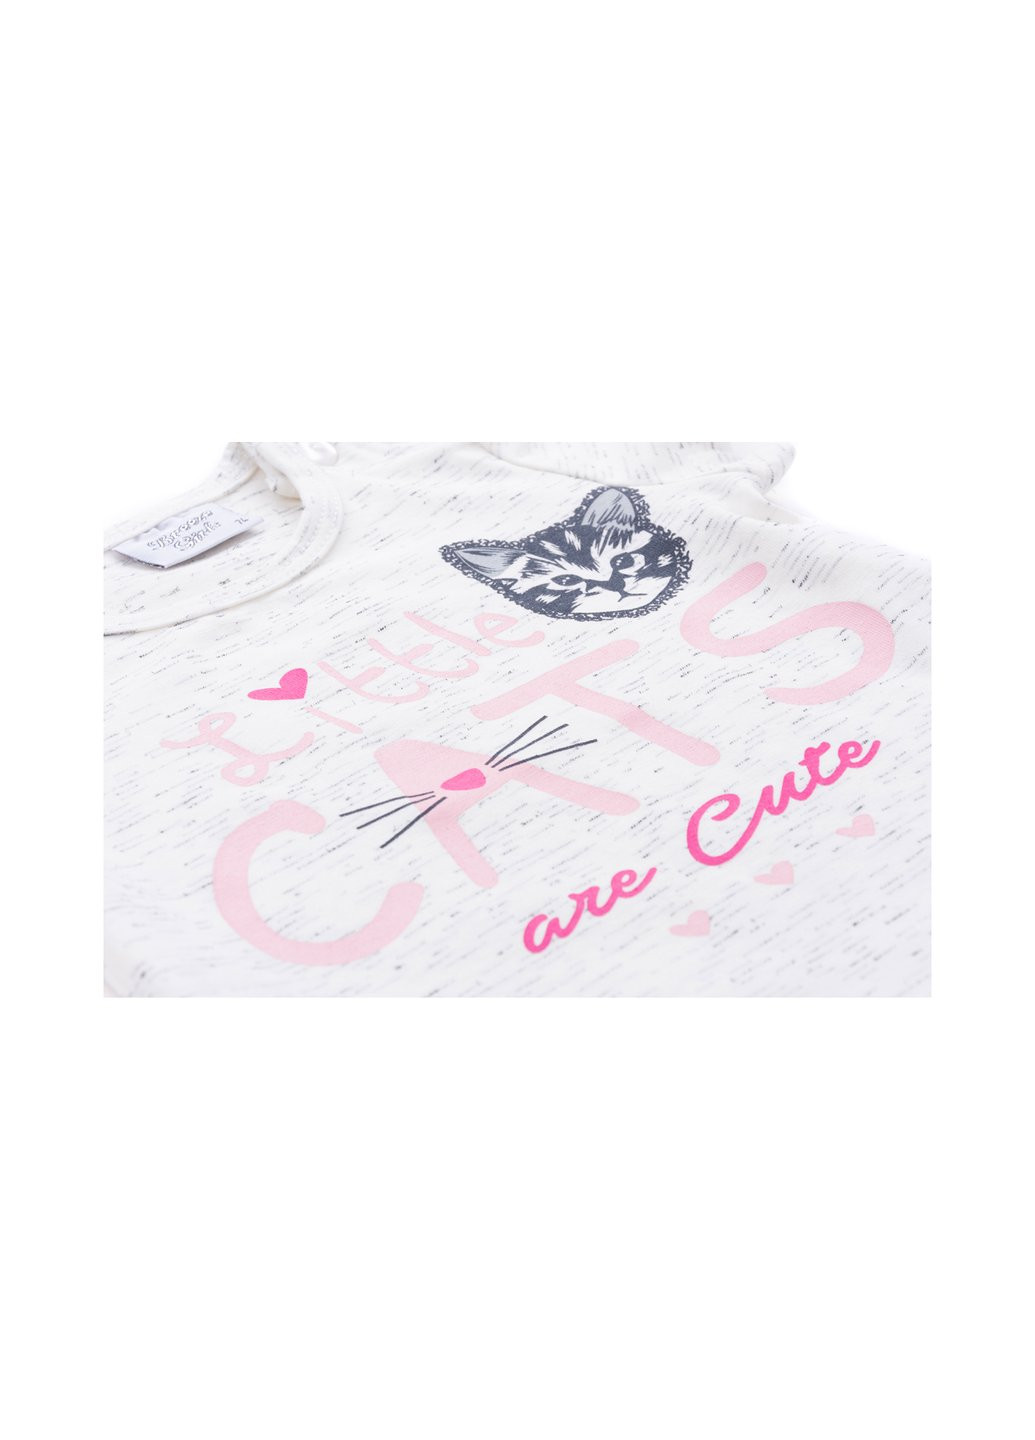 Комбінований літній набір дитячого одягу футболка з котиком та штанці з кишеньками (8983-92g-cream) Breeze